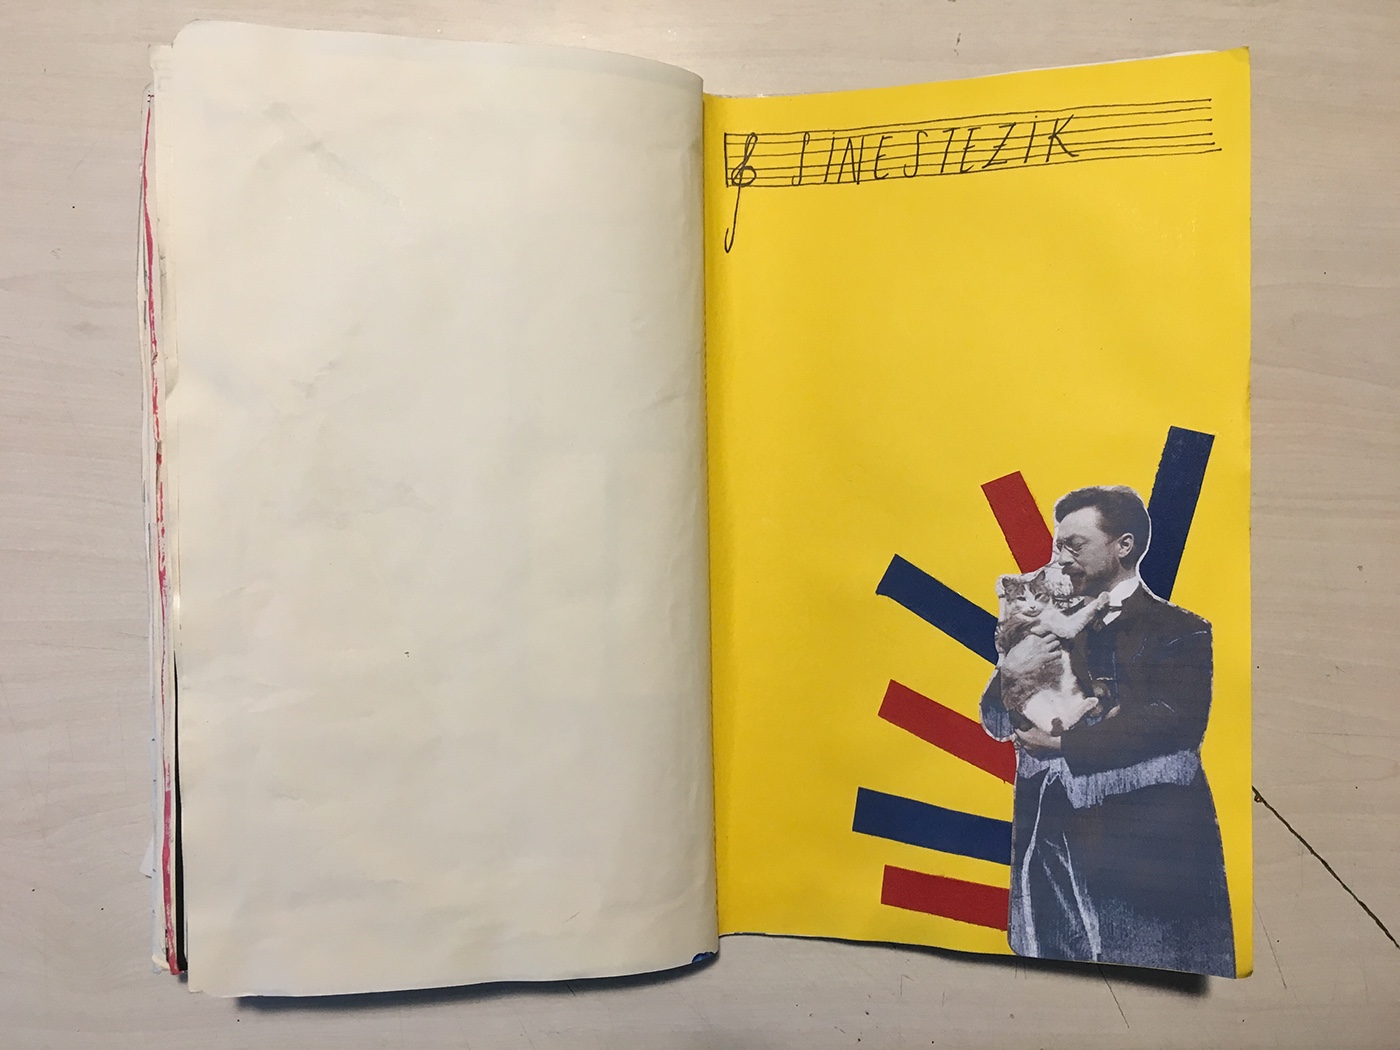 Moleskin Art journal sketchbook scrapbook collage